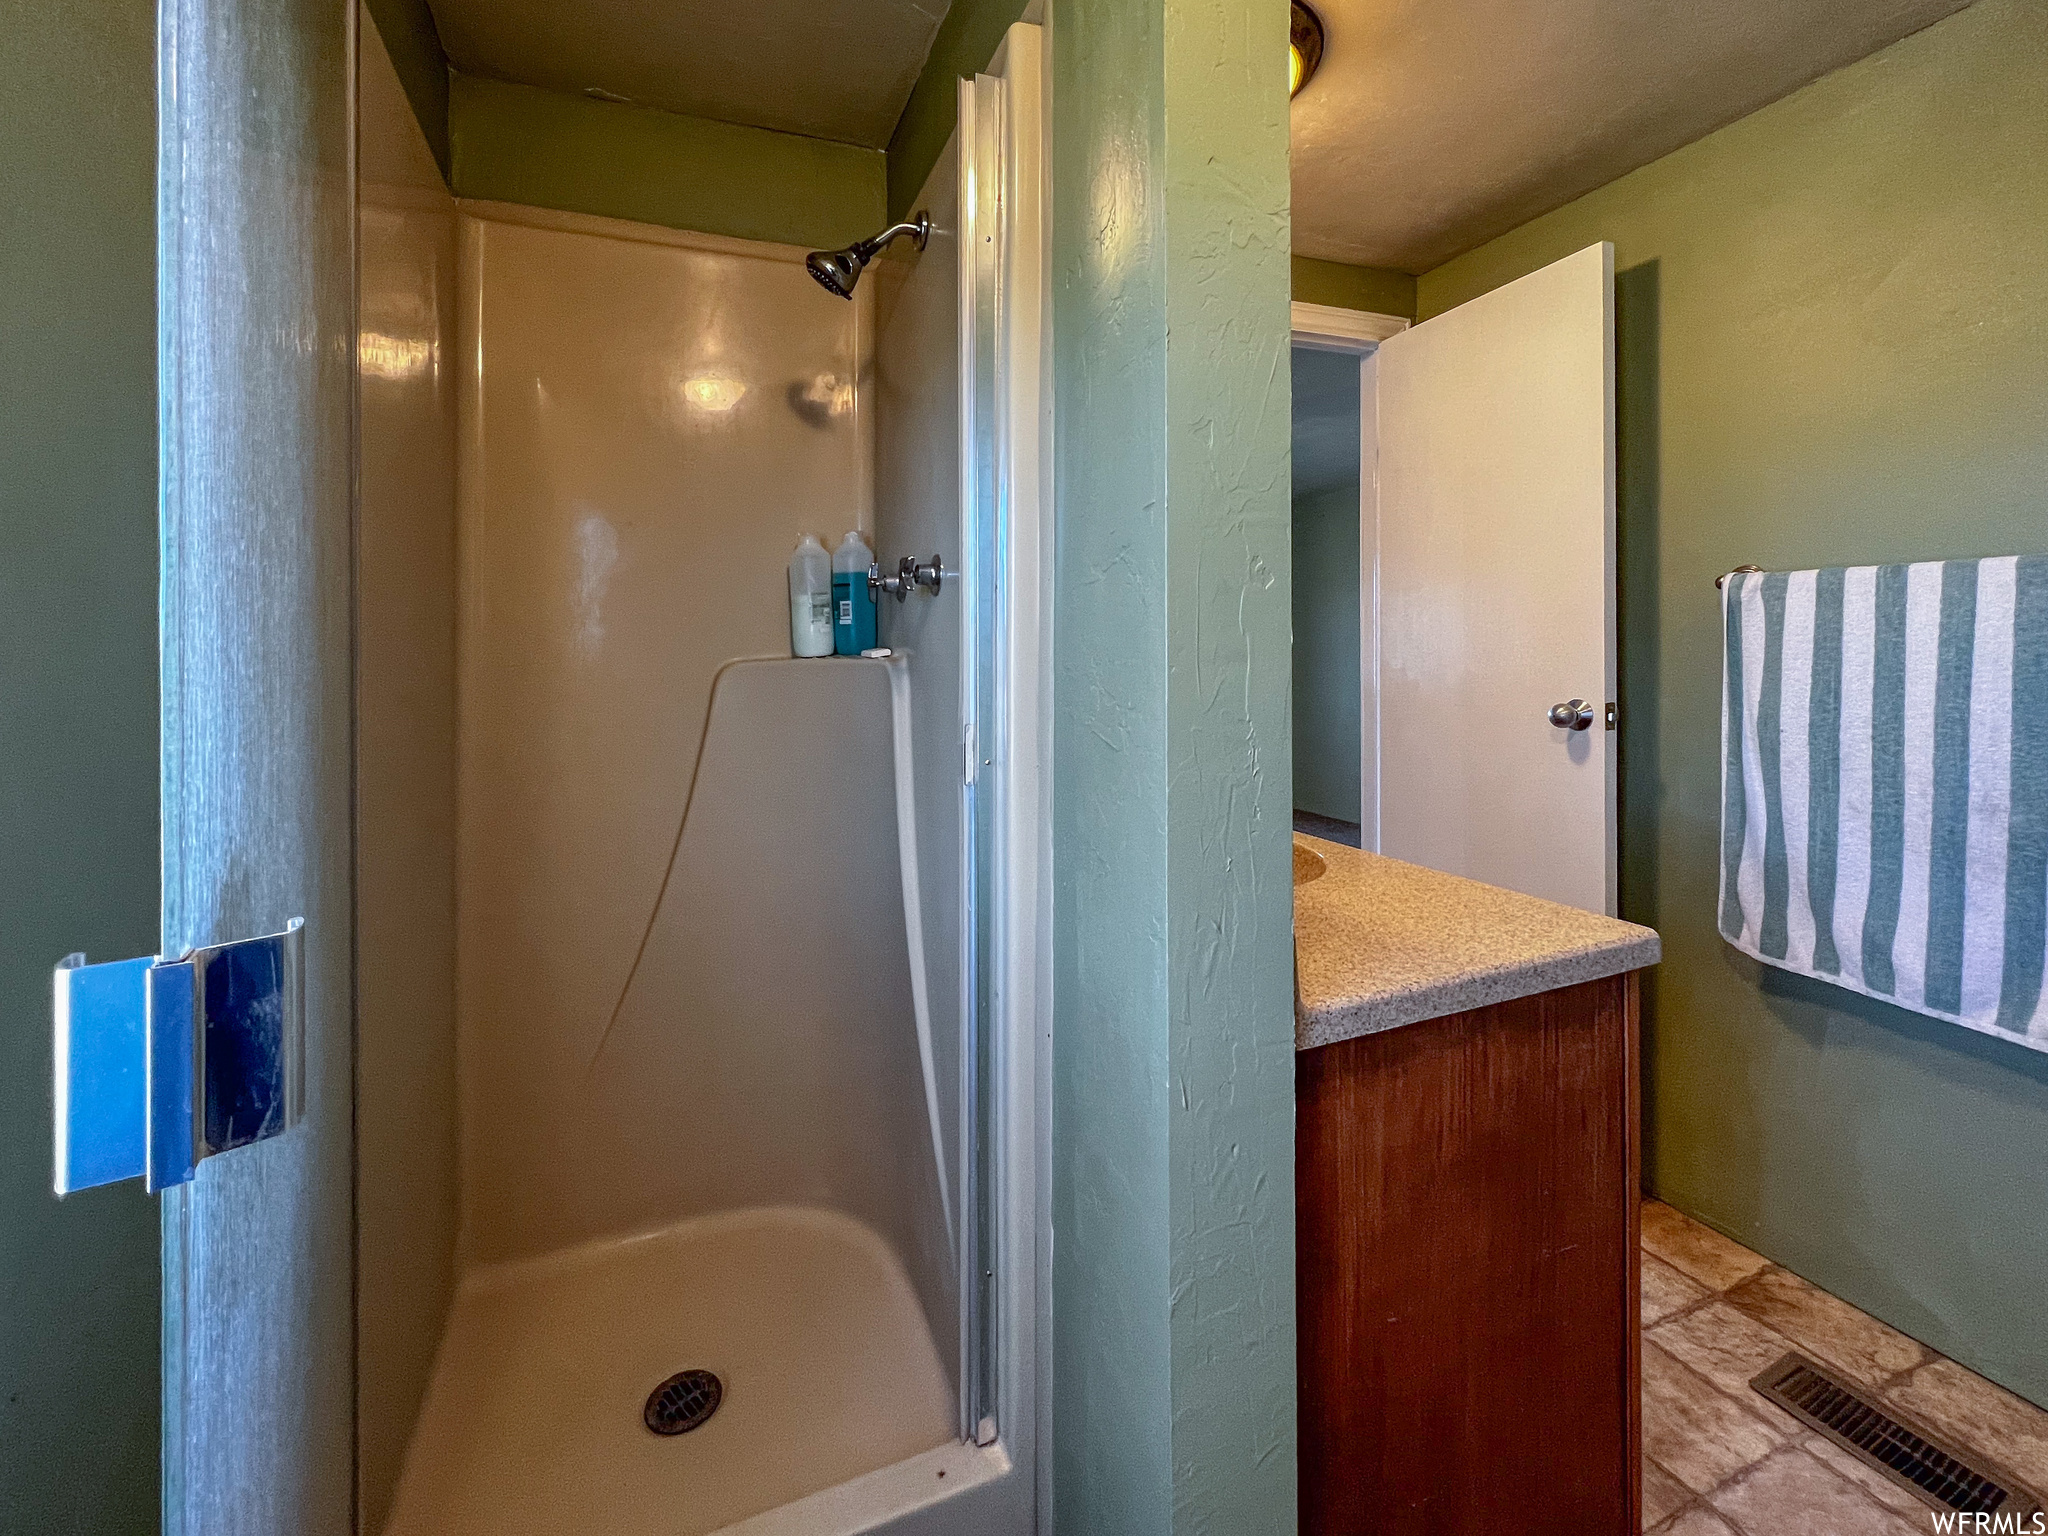 Bathroom featuring tile floors, walk in shower, and vanity